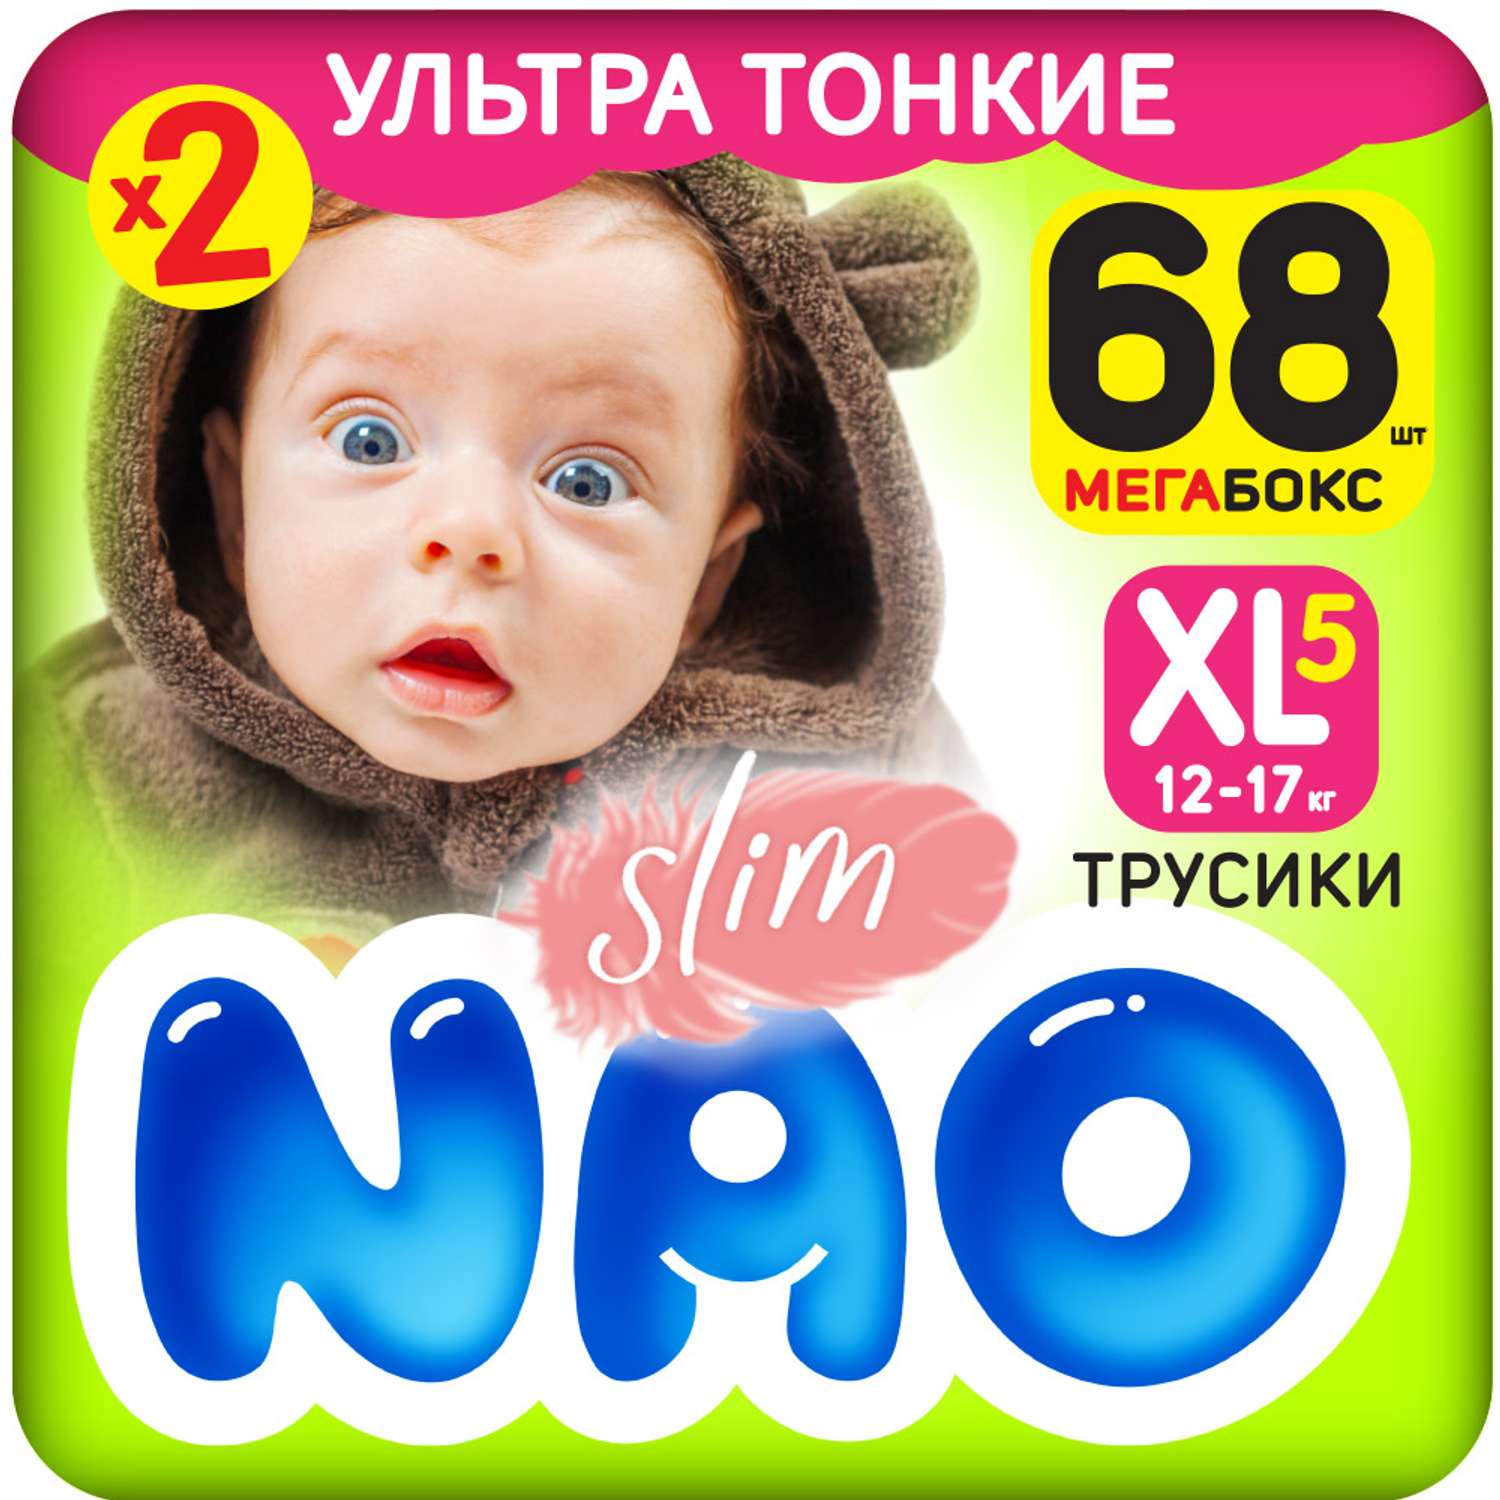 Подгузники-трусики NAO Slim 5 размер XL памперсы для детей 12-17 кг 68 шт - фото 1